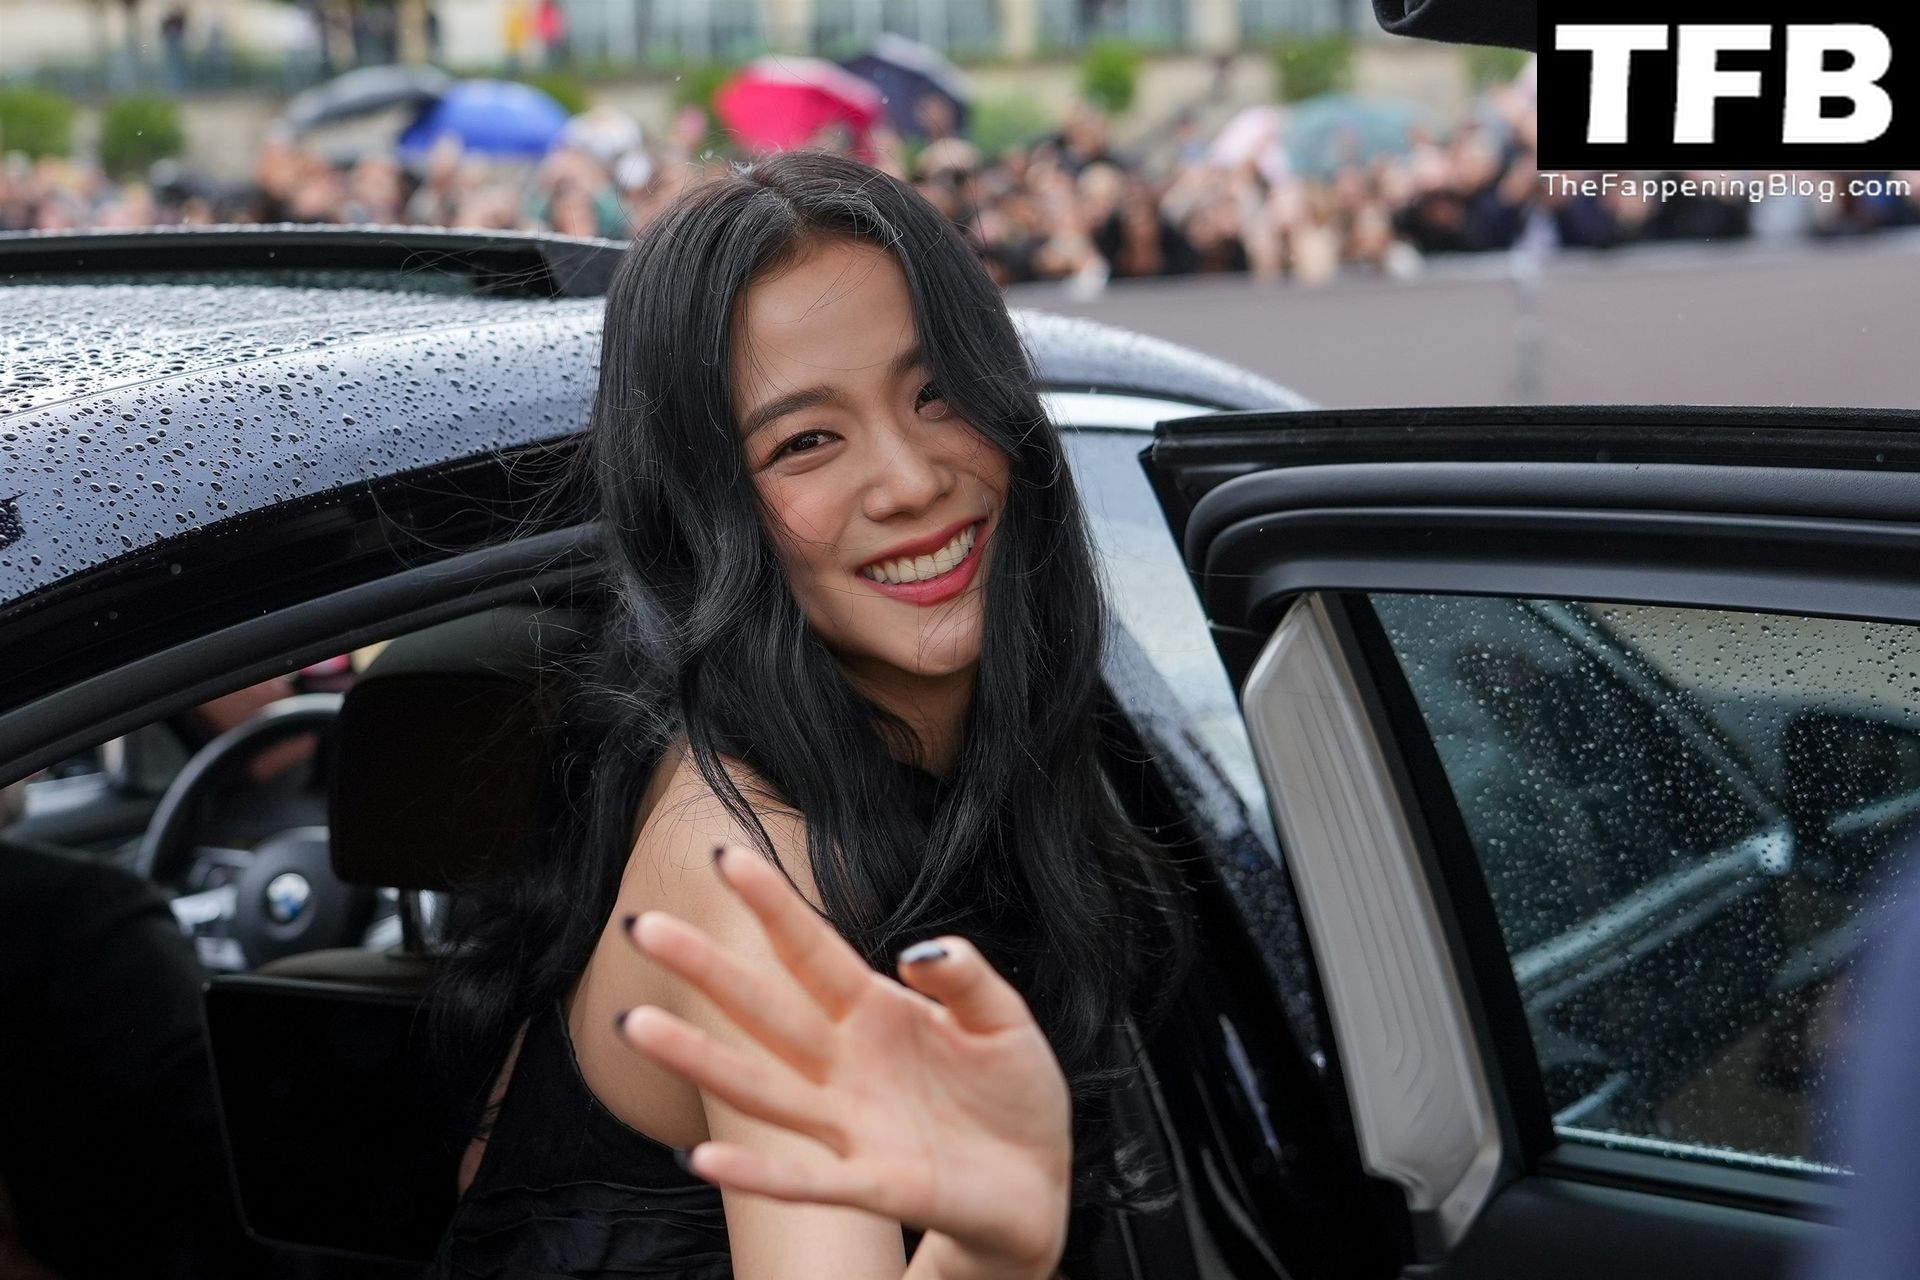 Leggy Kim Ji-soo Attends the Dior Fashion Show in Paris (39 Photos)